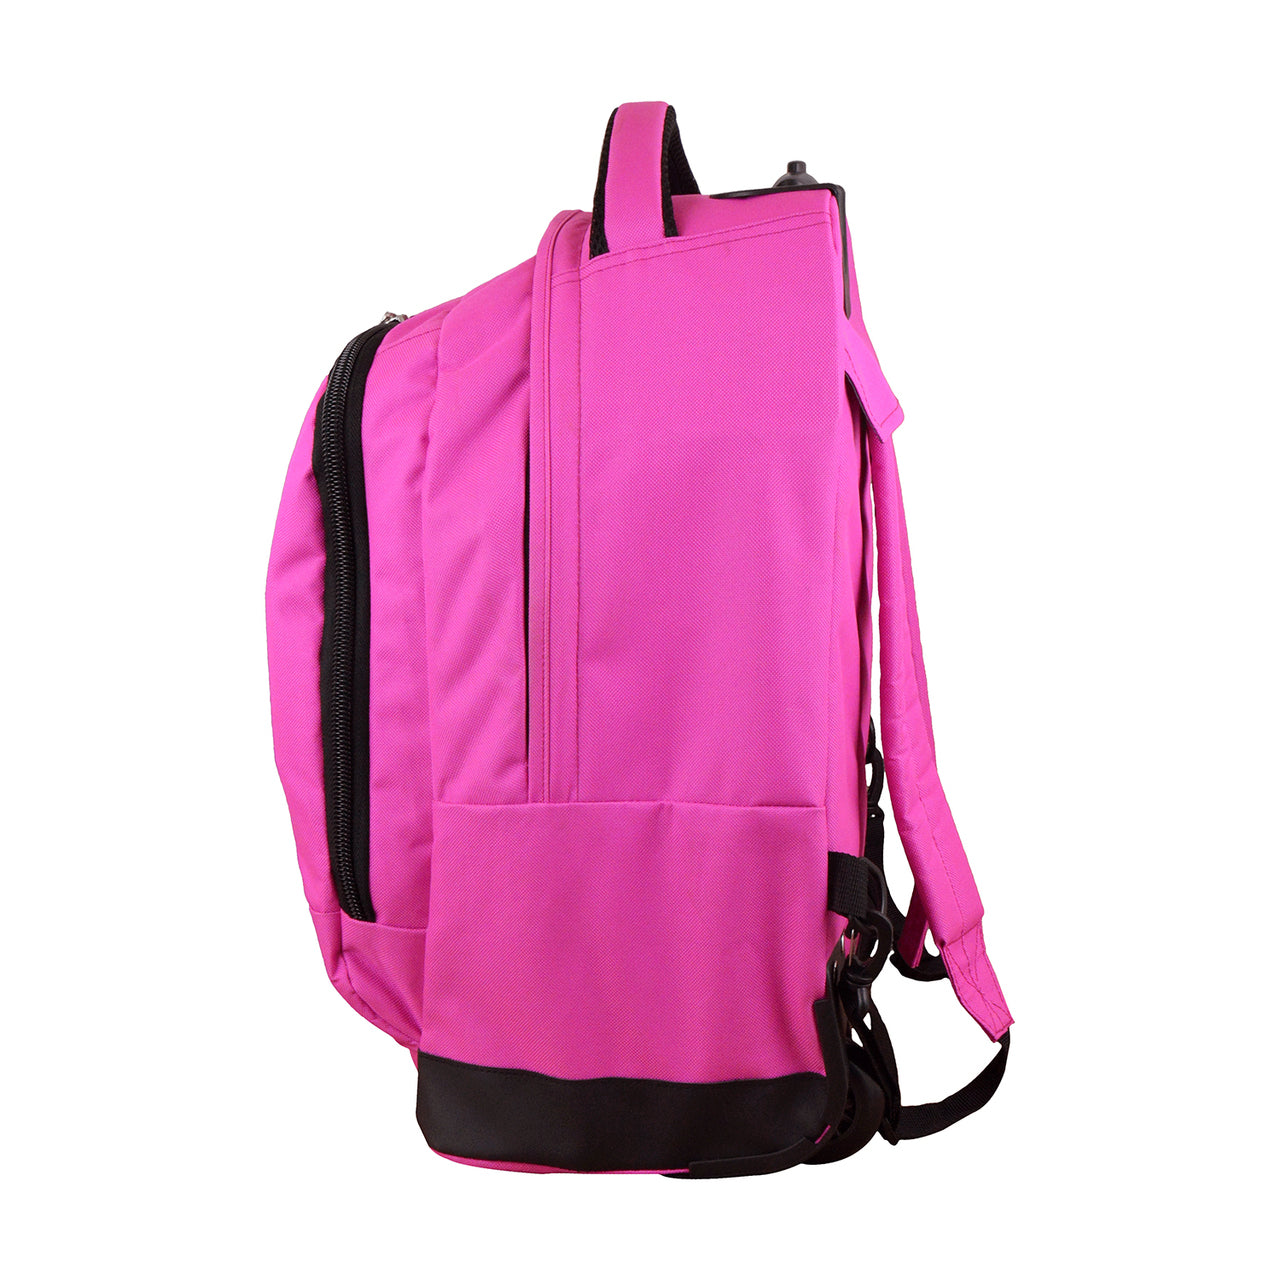 Virginia Premium Wheeled Backpack in Pink